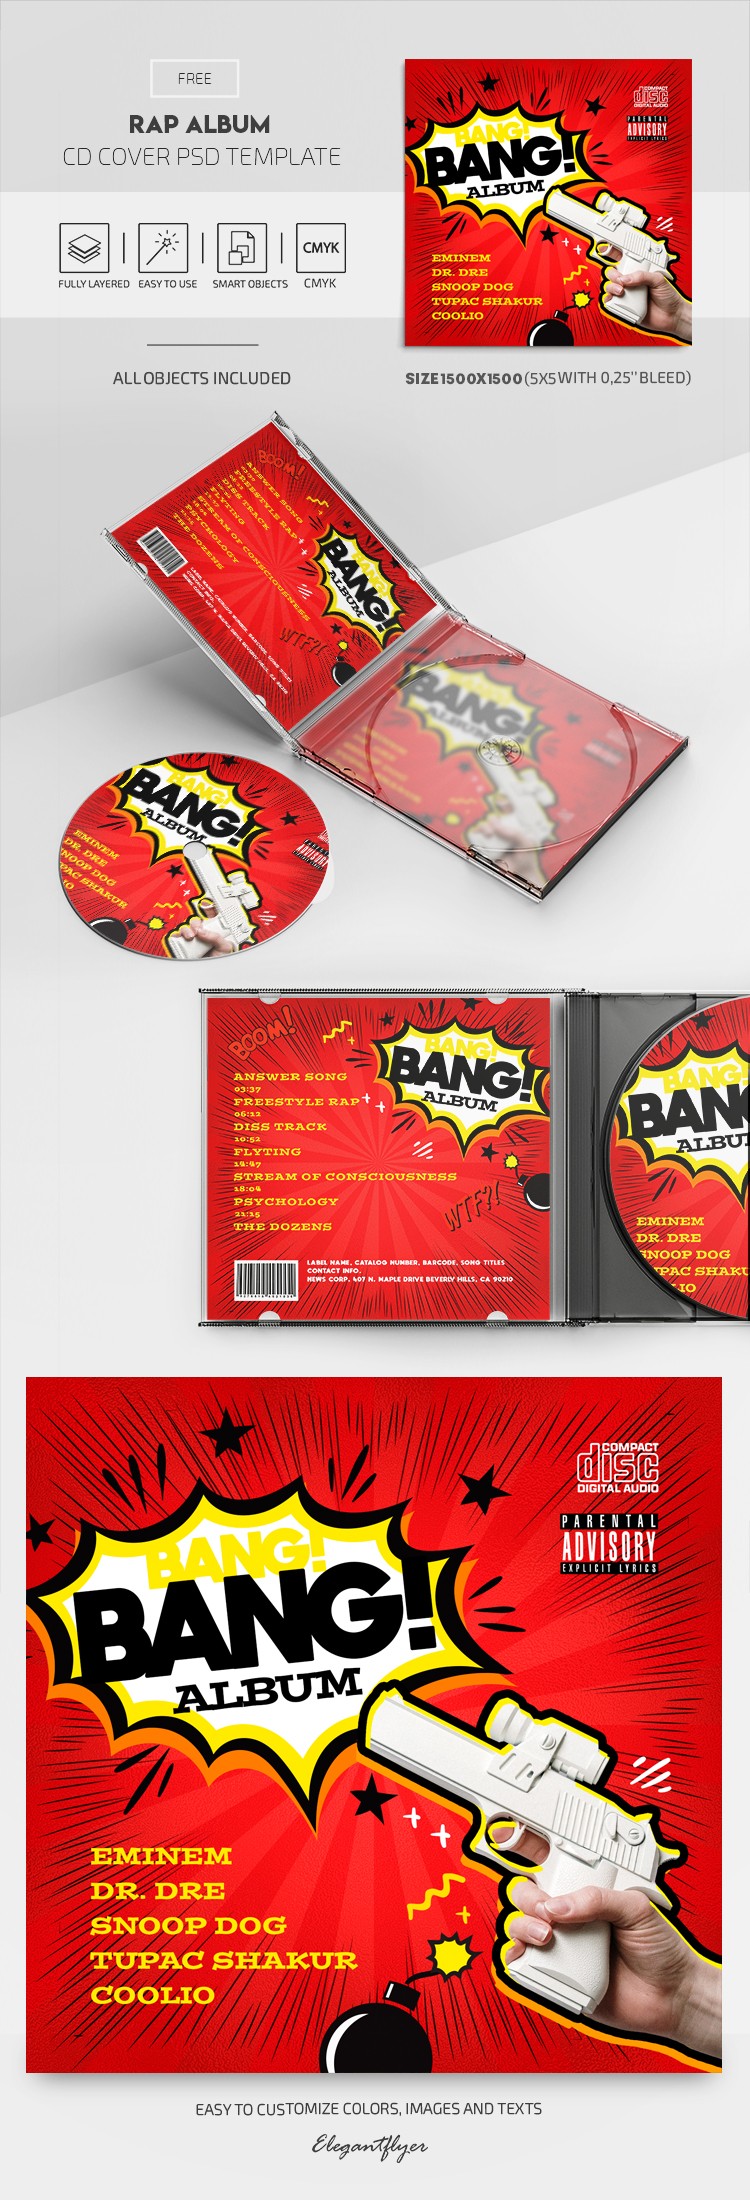 Album Rap - Modello di copertina CD PSD gratuito - 10028046